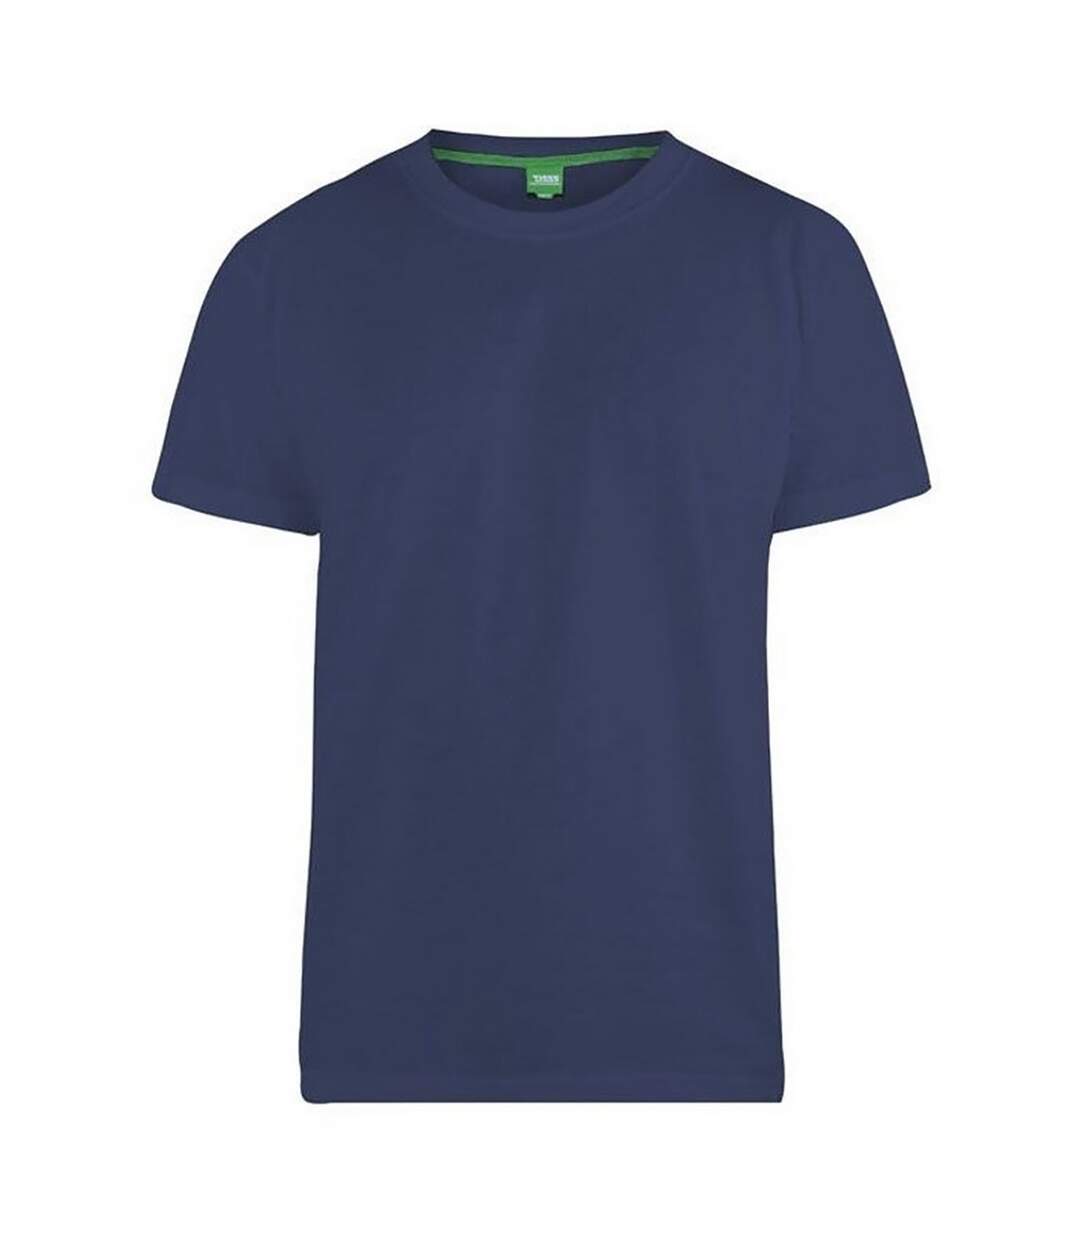 Duke - T-shirt FLYERS - Homme (Bleu marine) - UTDC164